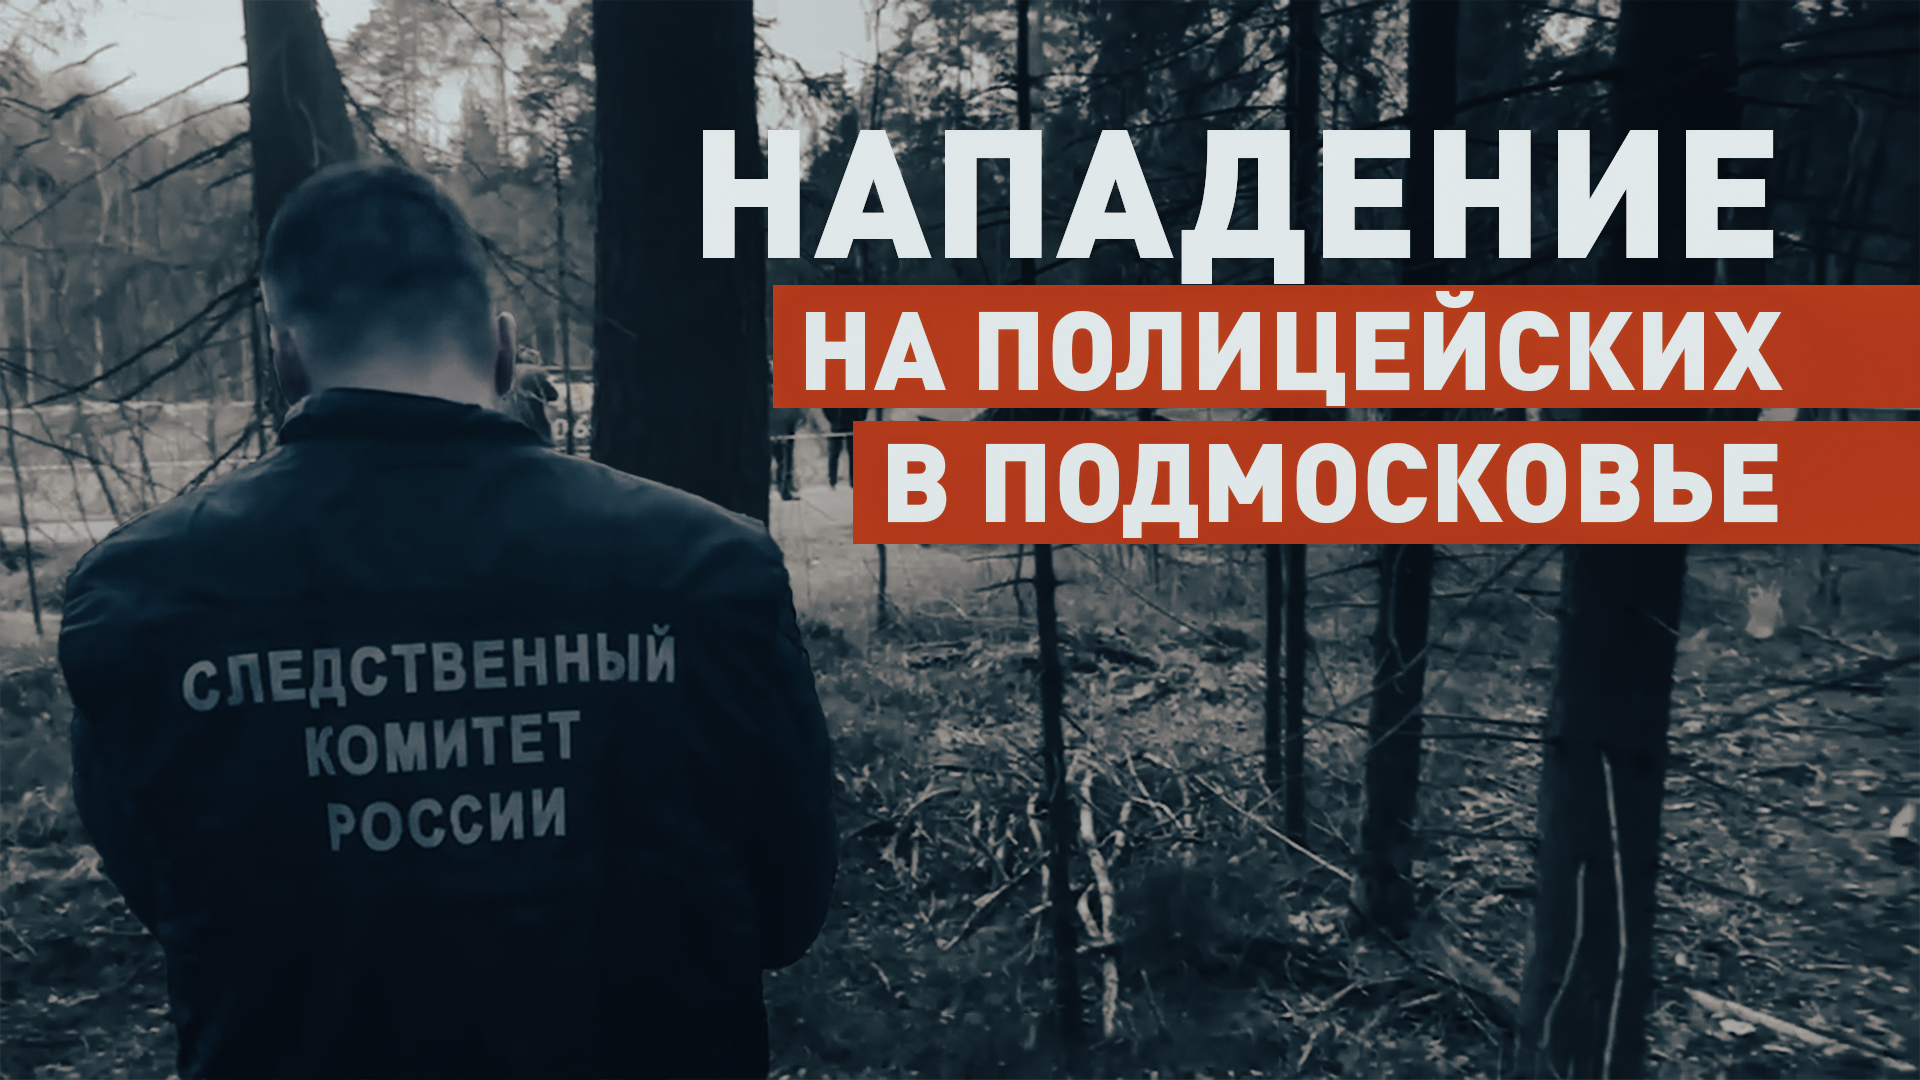 Работа СК на месте нападения на полицейских в Подмосковье